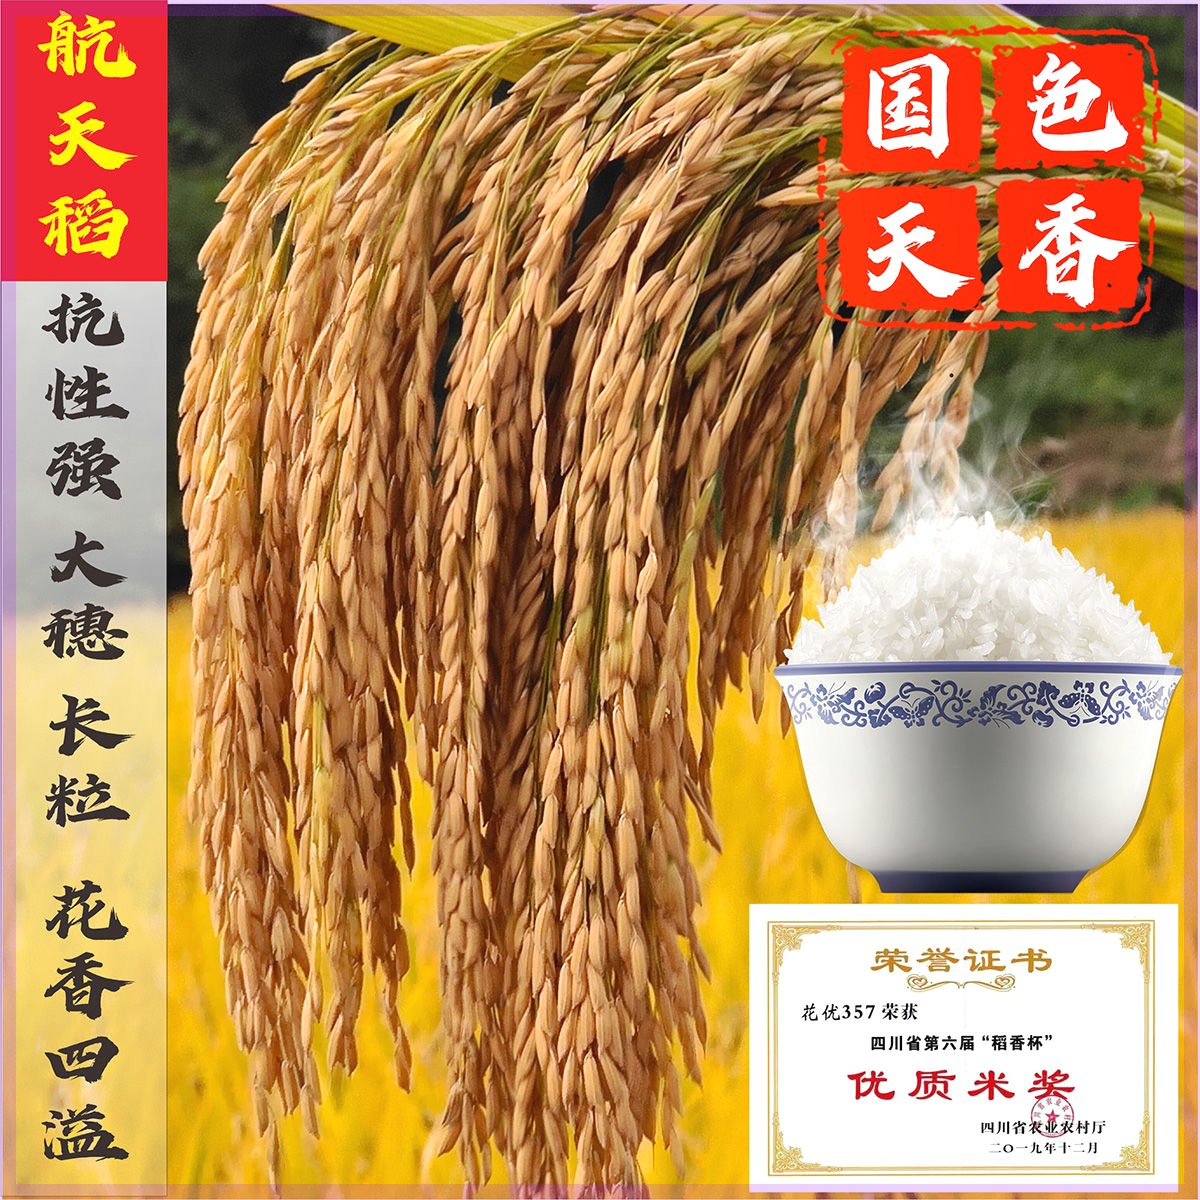 航天水稻种子抗性强米质优长粒米杂交水稻种子高产稻谷种国色天香